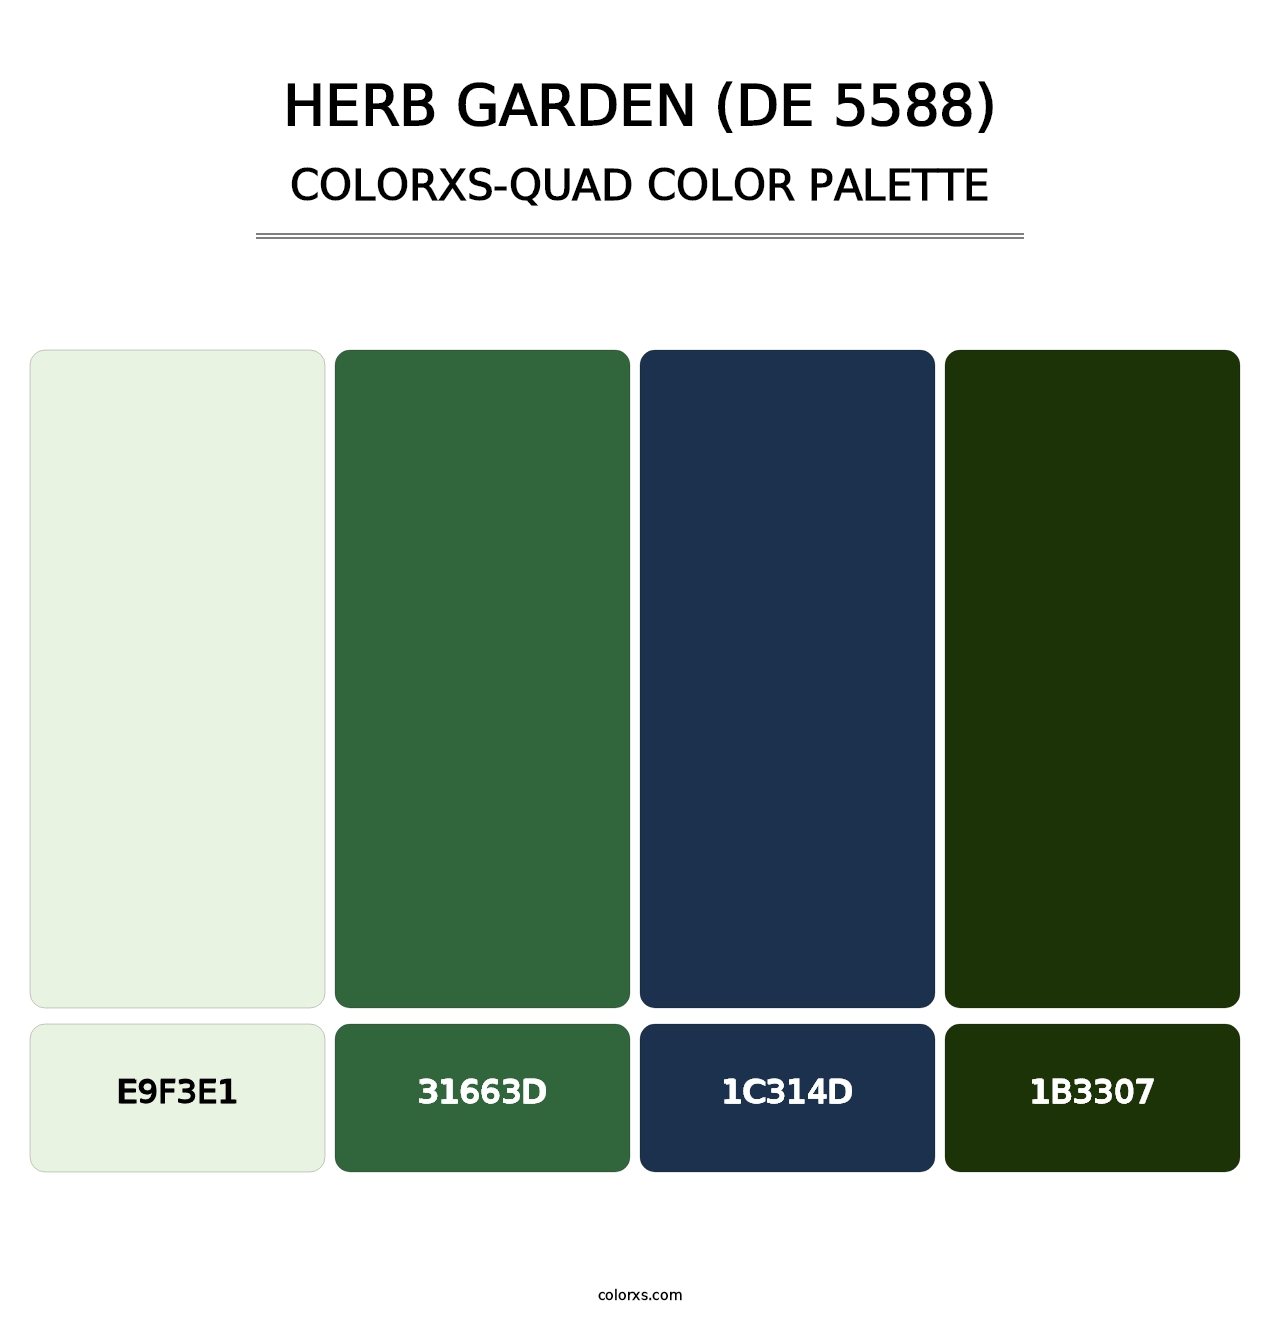 Herb Garden (DE 5588) - Colorxs Quad Palette